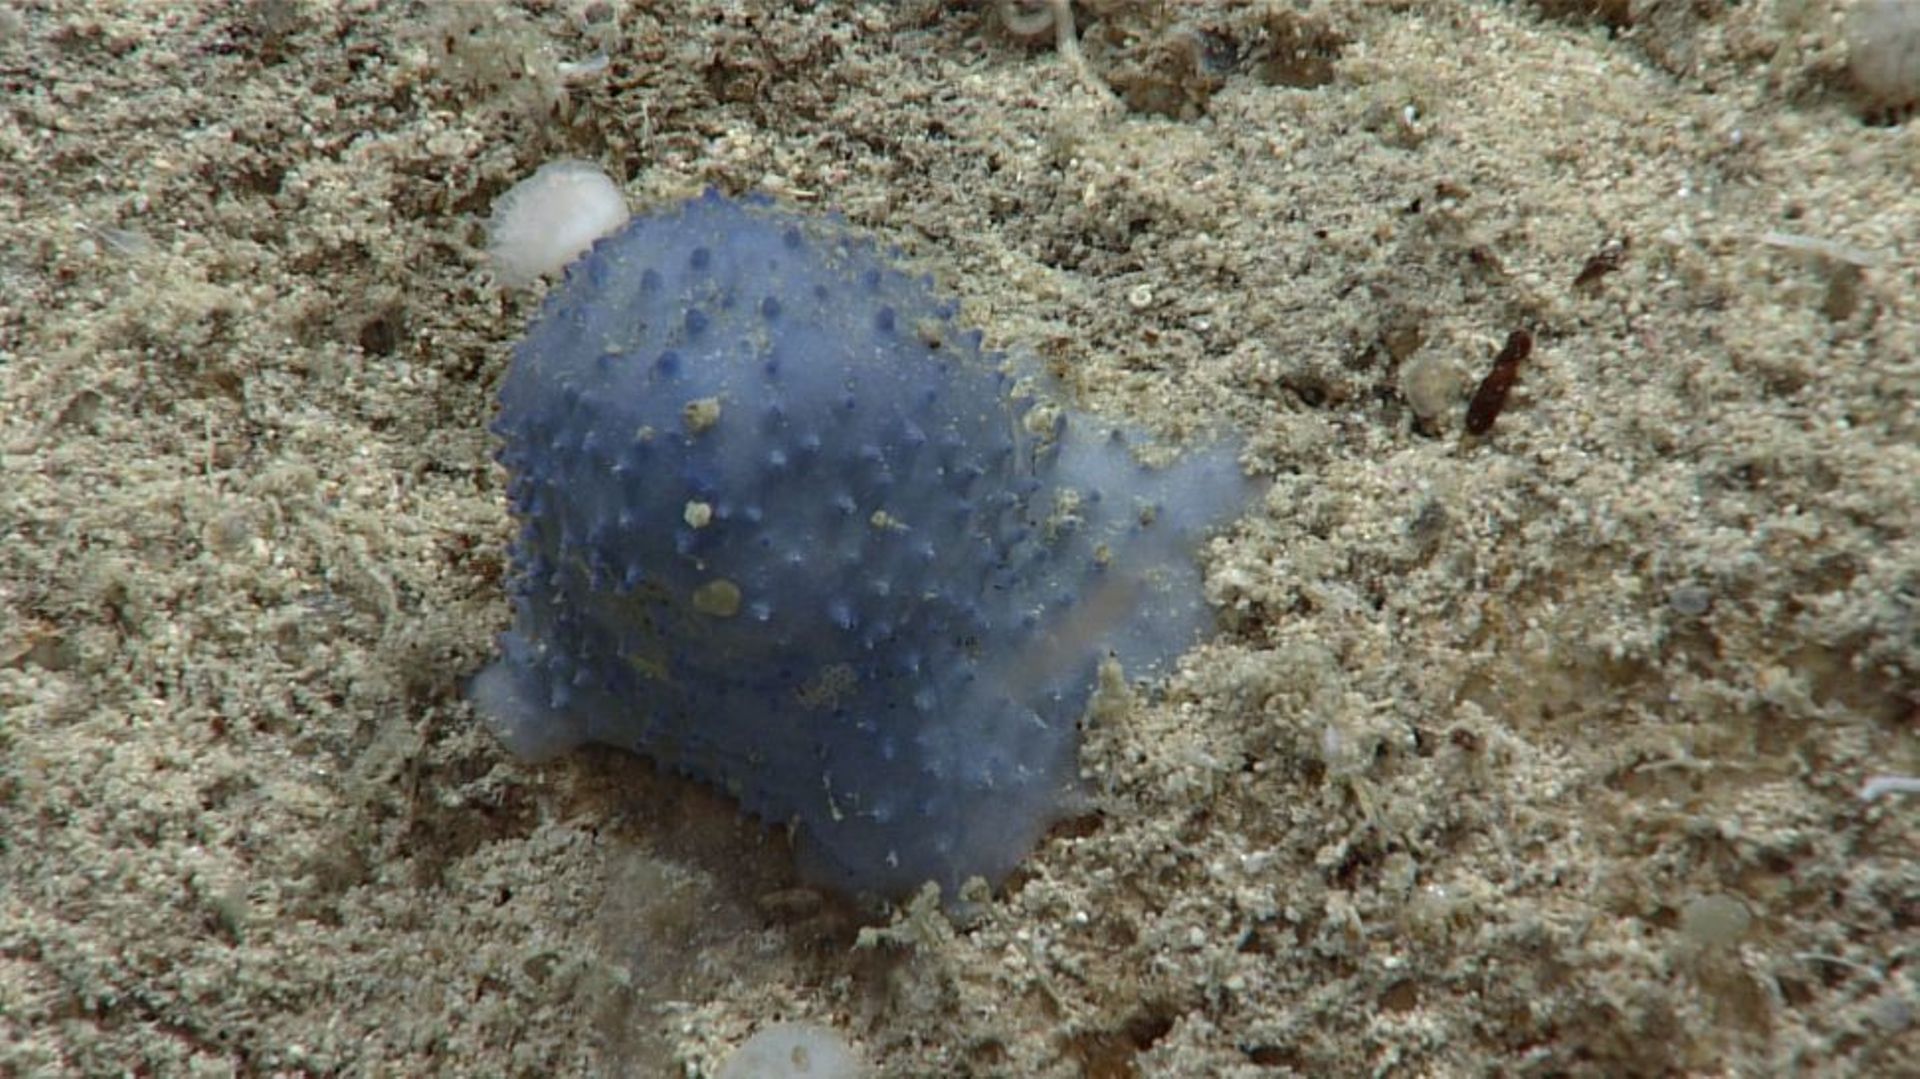 Gli scienziati scoprono una misteriosa creatura marina: blu, morbida, immobile